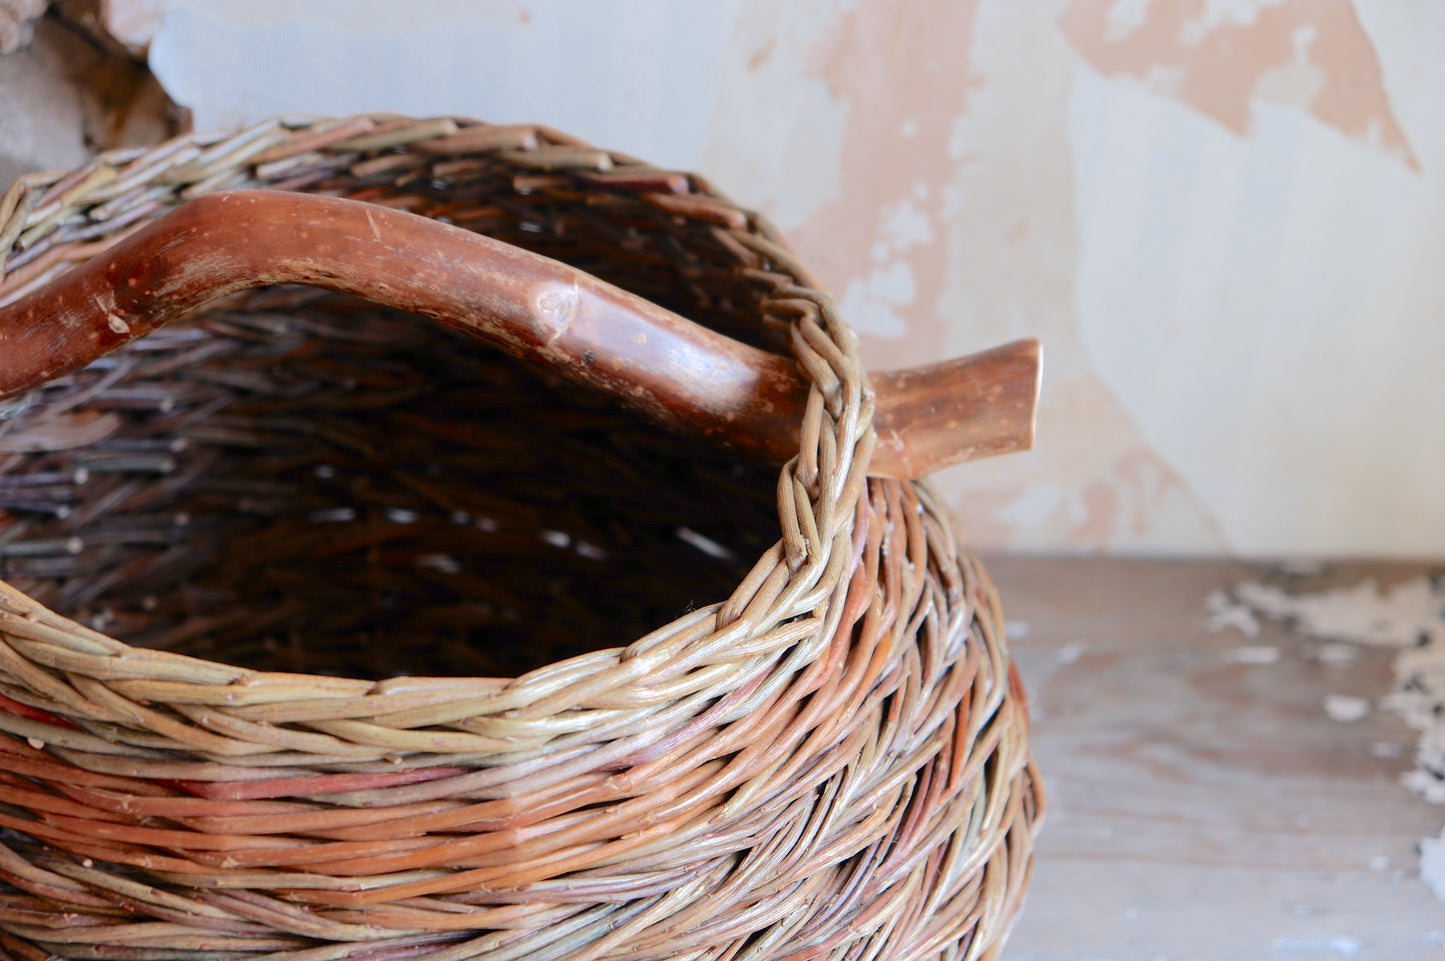 Herringbone Weave Basket with Wooden Handle